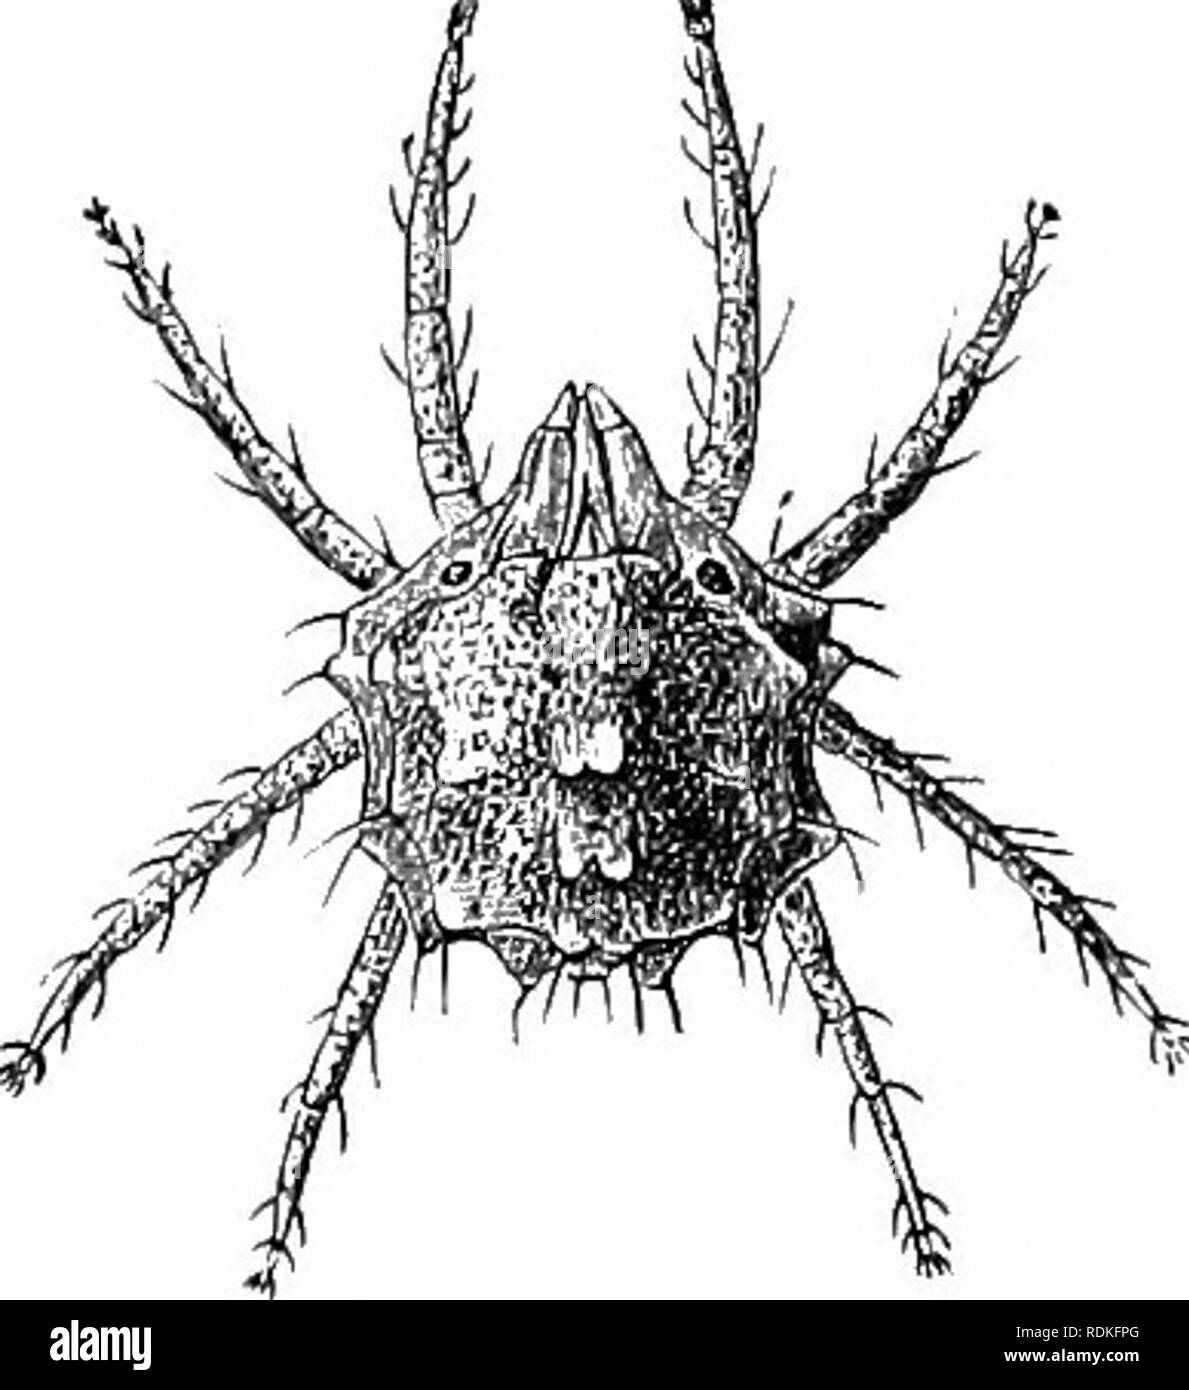 . Il Cambridge storia naturale. Zoologia. Fig. 247.-alticola Atax, x 16. (Dopo Cauestrini.) dalla Dufour di appartenere. è stato considerato per lo stesso ordine. (Iii) Il Tetranychinae o " Spin- ning-acari " sono fitofagi e fare molto di lesioni alle piante, aspirando il SAP da foglie e dando loro una Tetranychus telarius è il " red-spider " della nomenclatura popolare. Fig. 248.-Tetranychus gibbo- sus, X 50. (Dopo canne- trini.) blisterato aspetto.. Si prega di notare che queste immagini vengono estratte dalla pagina sottoposta a scansione di immagini che possono essere state migliorate digitalmente per la leggibilità - colo Foto Stock